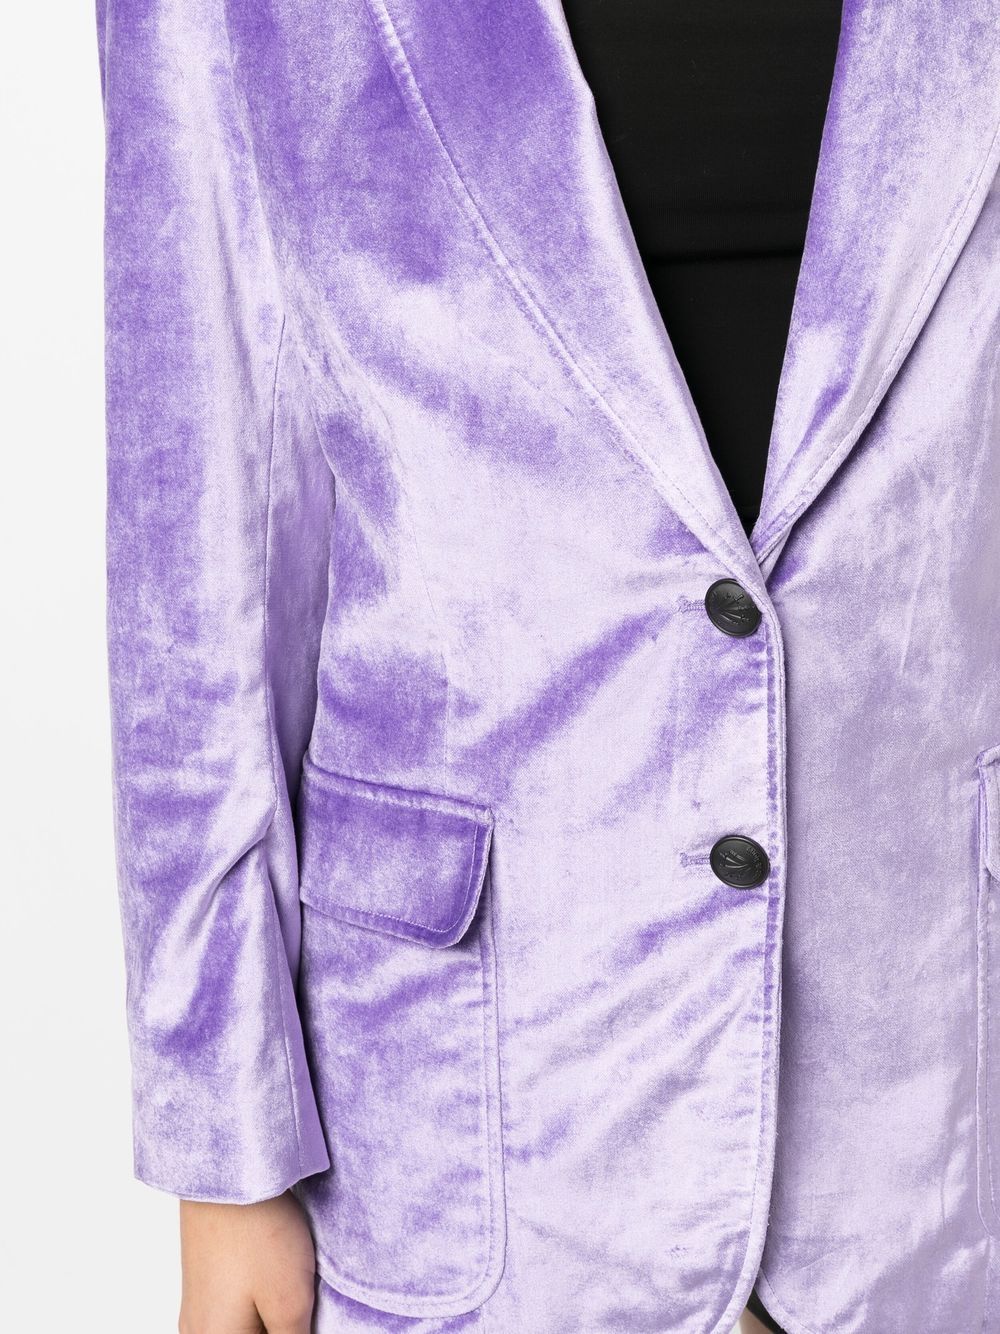 Purple Velvet Blazer